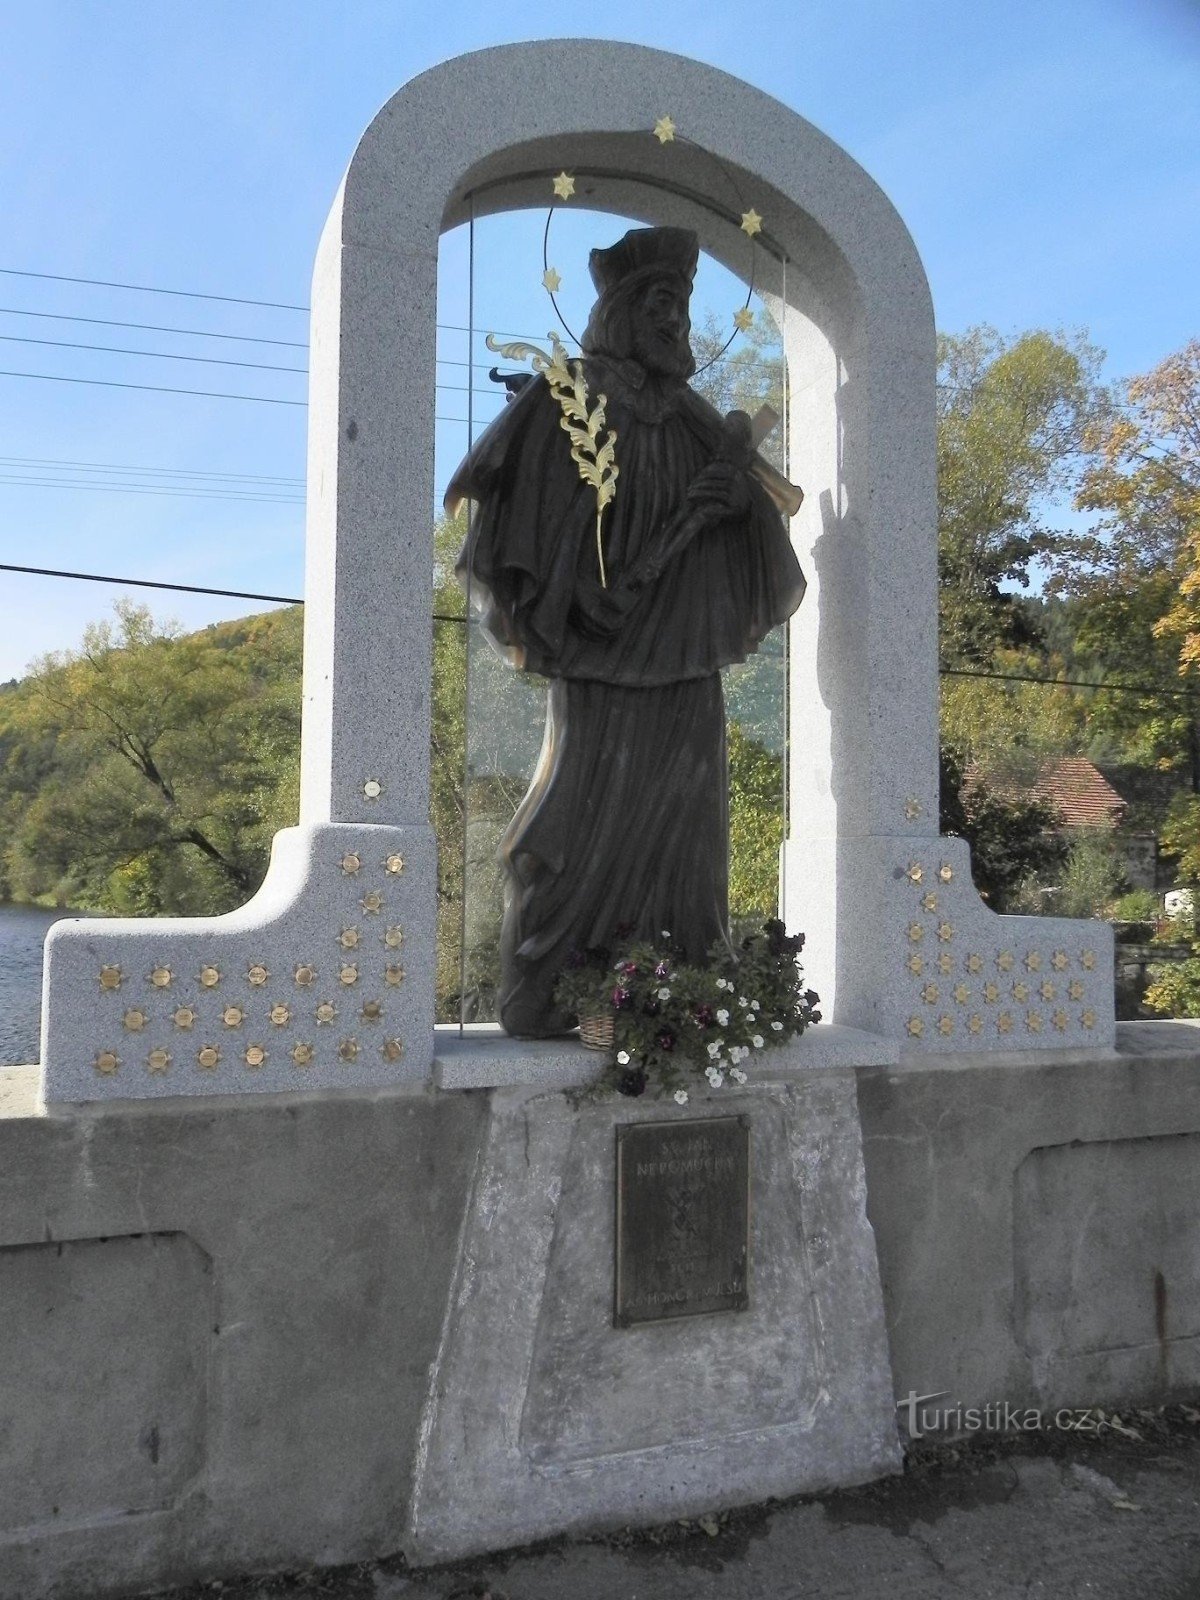 Čepice, skleněná socha sv. Jana z Nepomuku na mostě